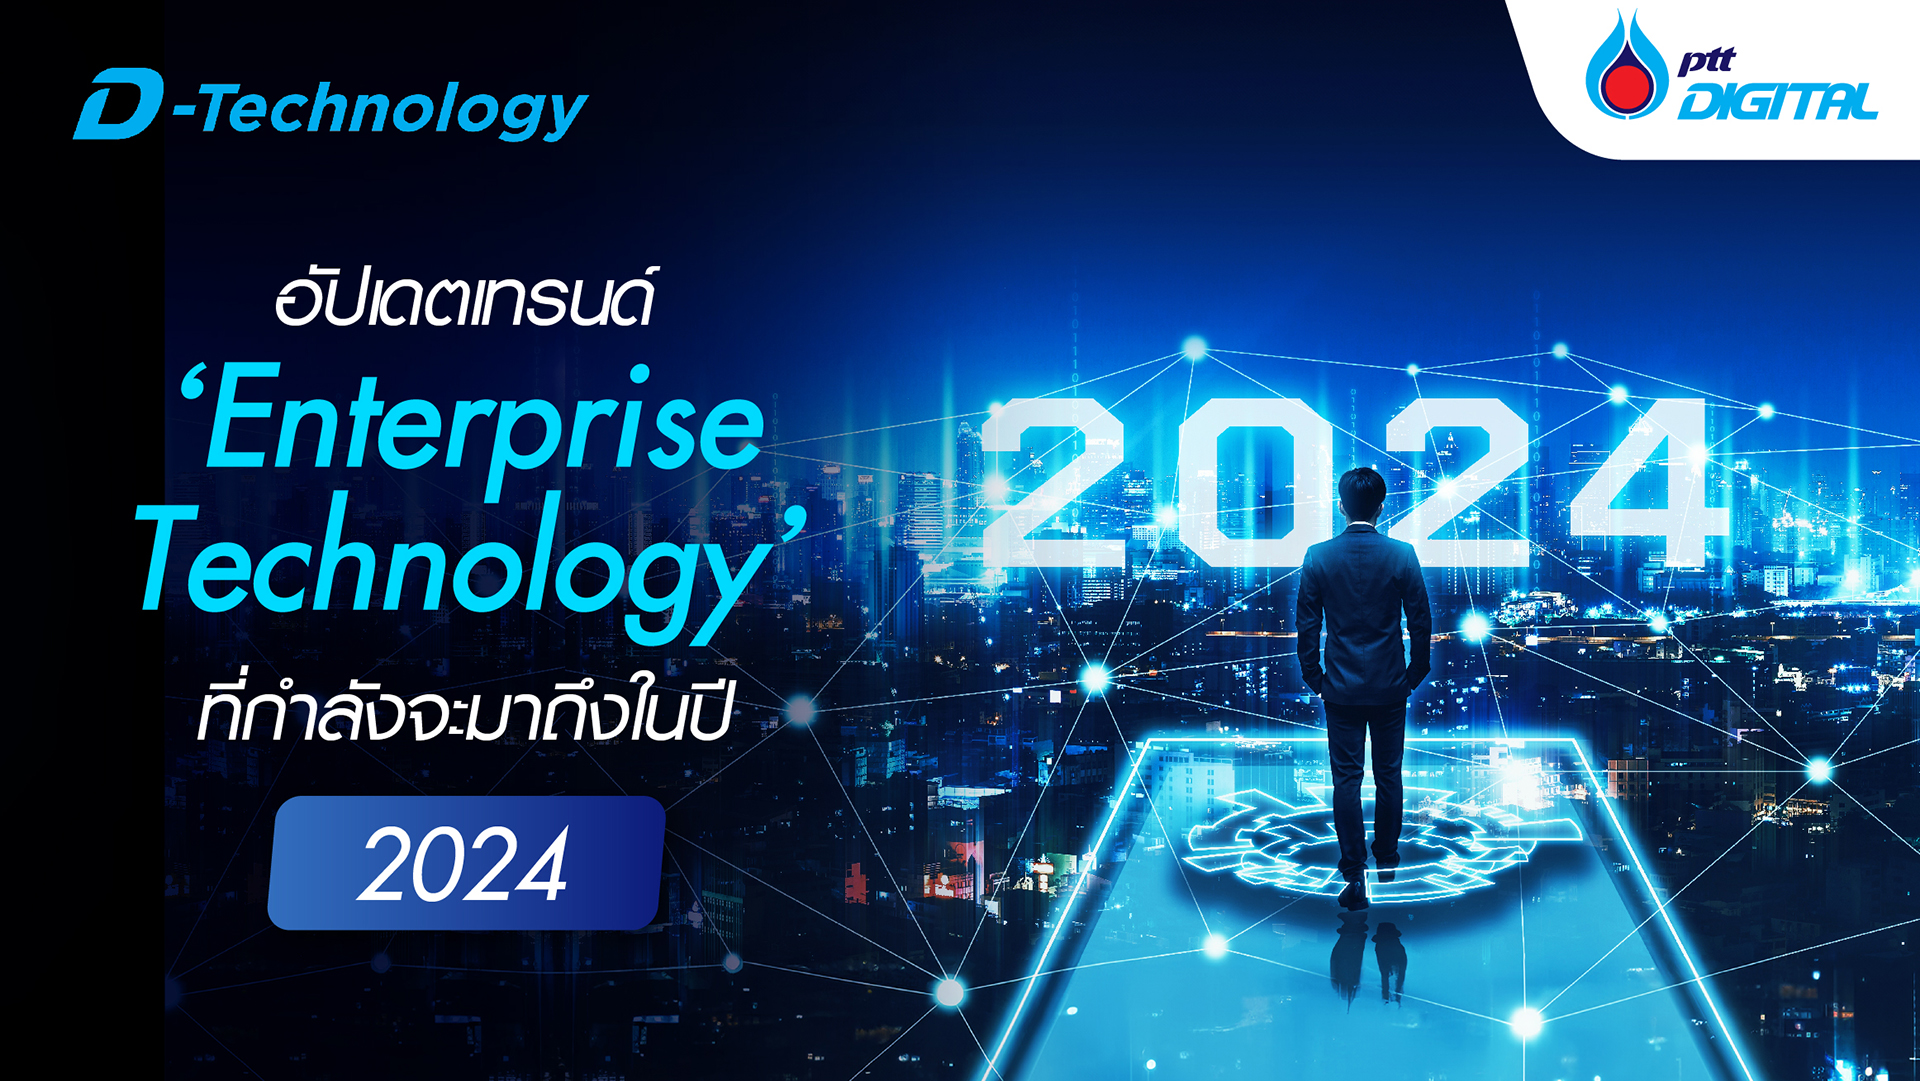 อัปเดตเทรนด์ ‘Enterprise Technology’ ที่กำลังจะมาถึงในปี 2024  